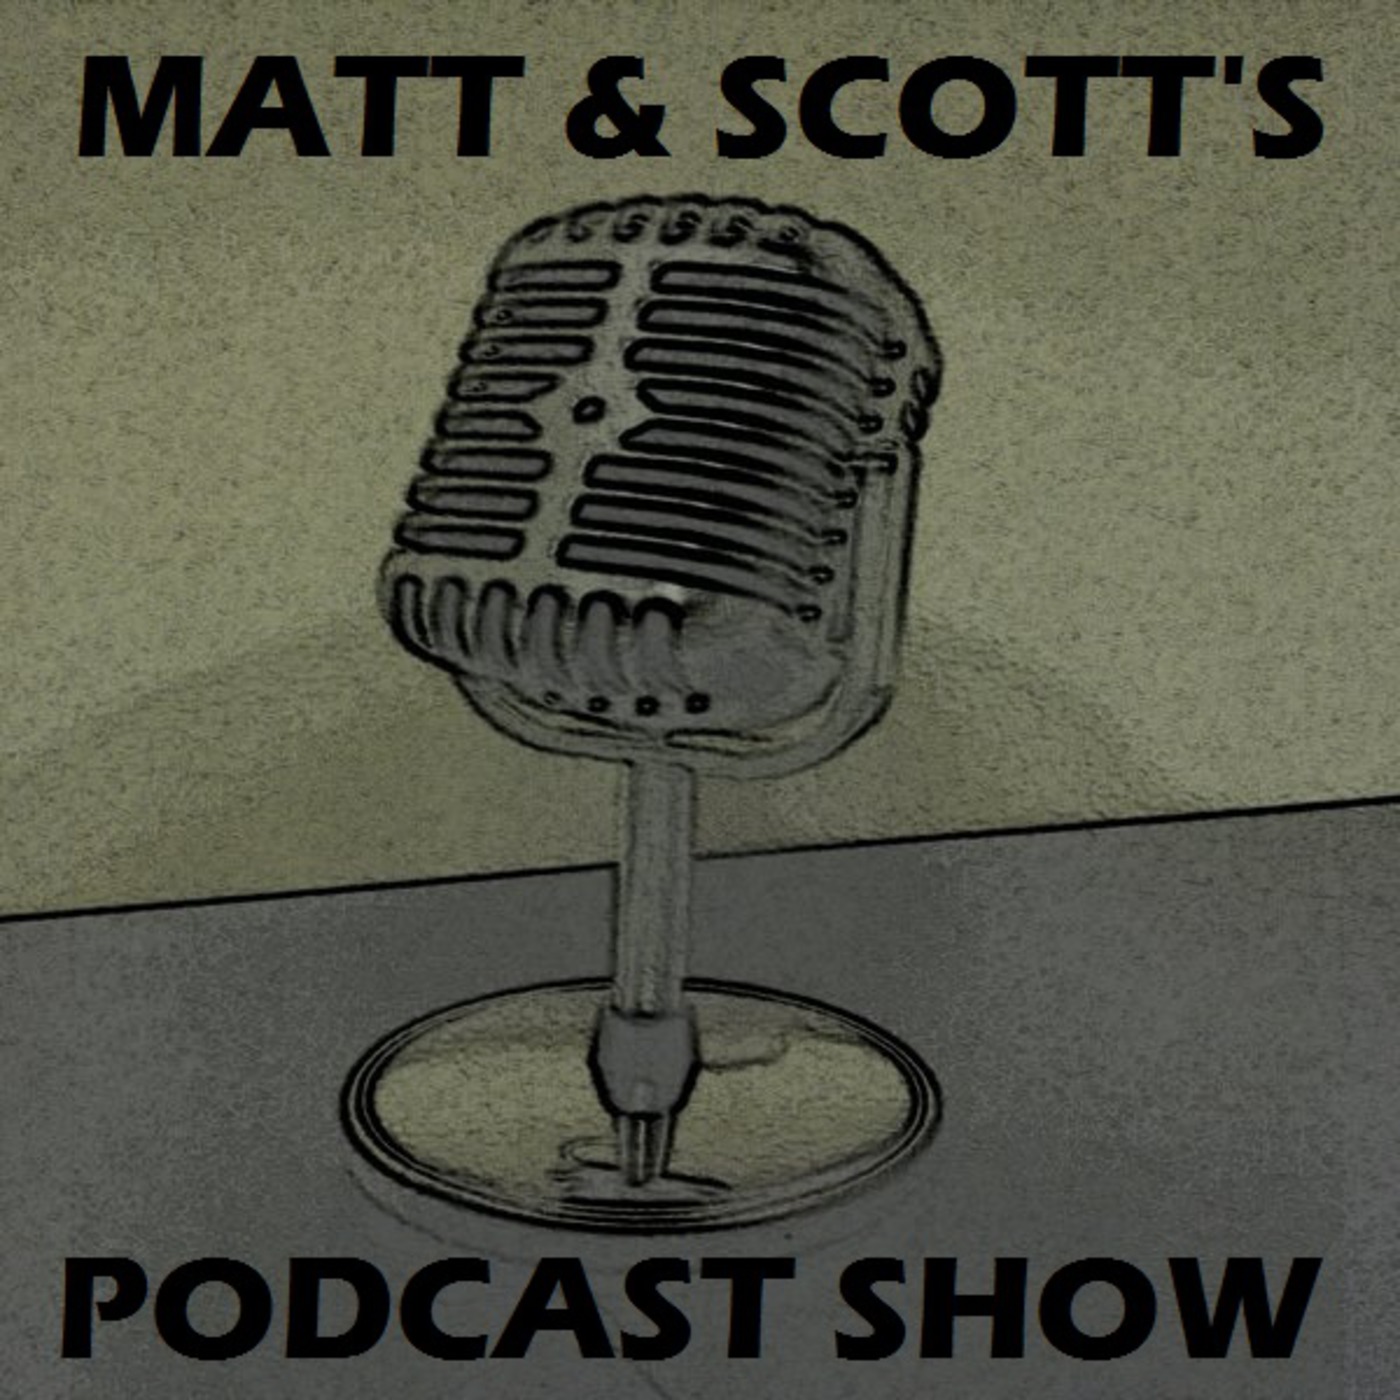 Matt & Scott's Podcast Show